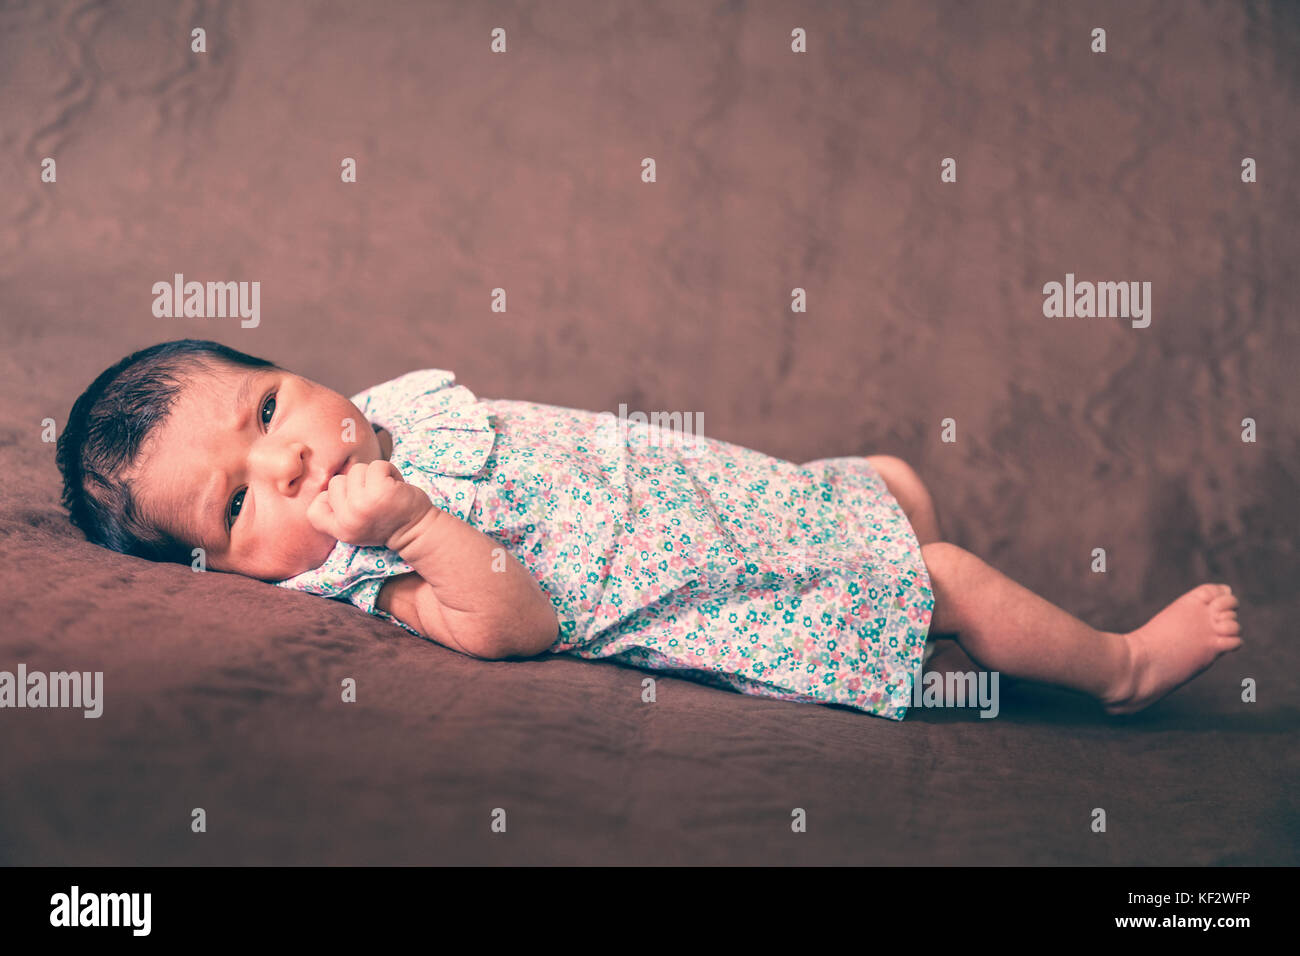 Cute zwei Wochen alte Neugeborene Mädchen hinlegen, die Augen öffnen und Suchen rund um das Tragen eines geblümten Kleid/neugeborenen Baby girl liegend Bett Kind Augen Stockfoto